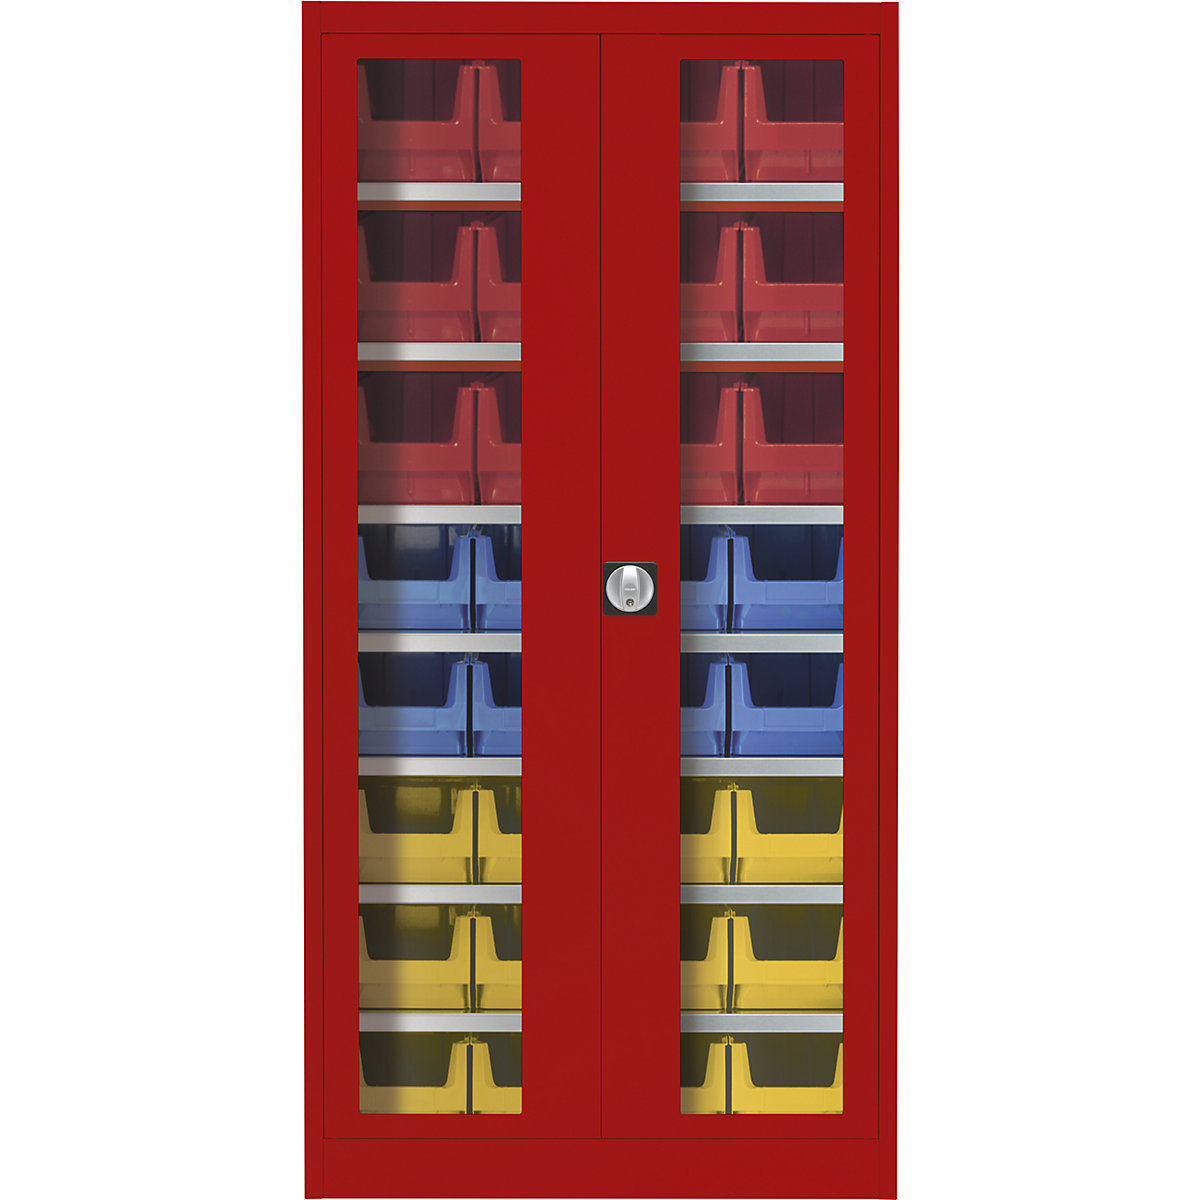 Skriňa s krídlovými dverami s priehľadným okienkom – mauser, s 32 prepravkami s viditeľným obsahom, ohnivo červená-7